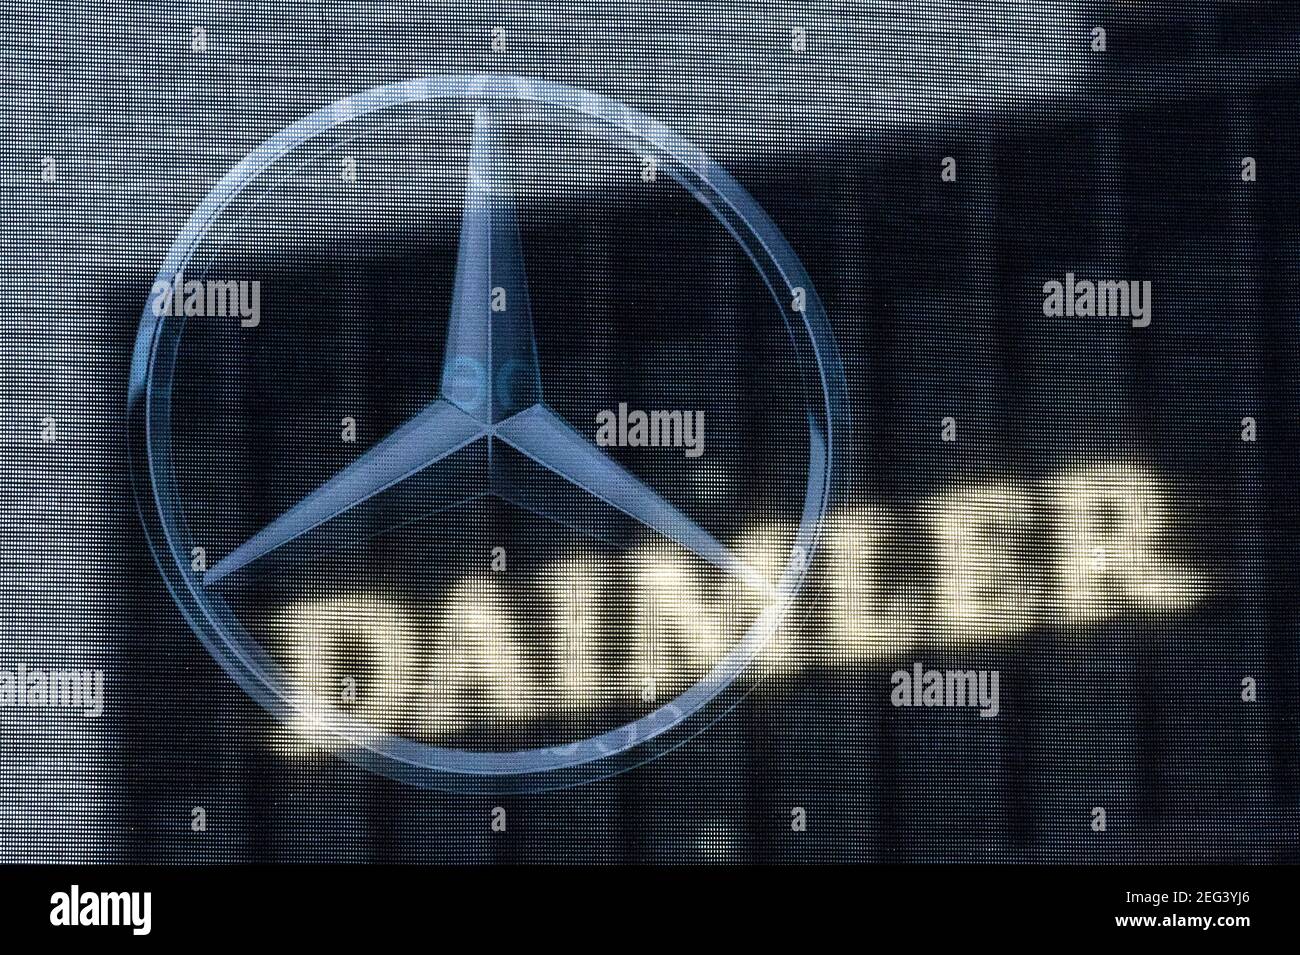 Stoccarda, Germania. 18 Feb 2021. La sede centrale della Daimler AG è visibile attraverso una bandiera raffigurante la stella Mercedes. (A dpa "Daimler realizza profitti significativamente maggiori nell'anno 2020 di Corona rispetto a prima". Credit: Marijan Murat/dpa/Alamy Live News Foto Stock